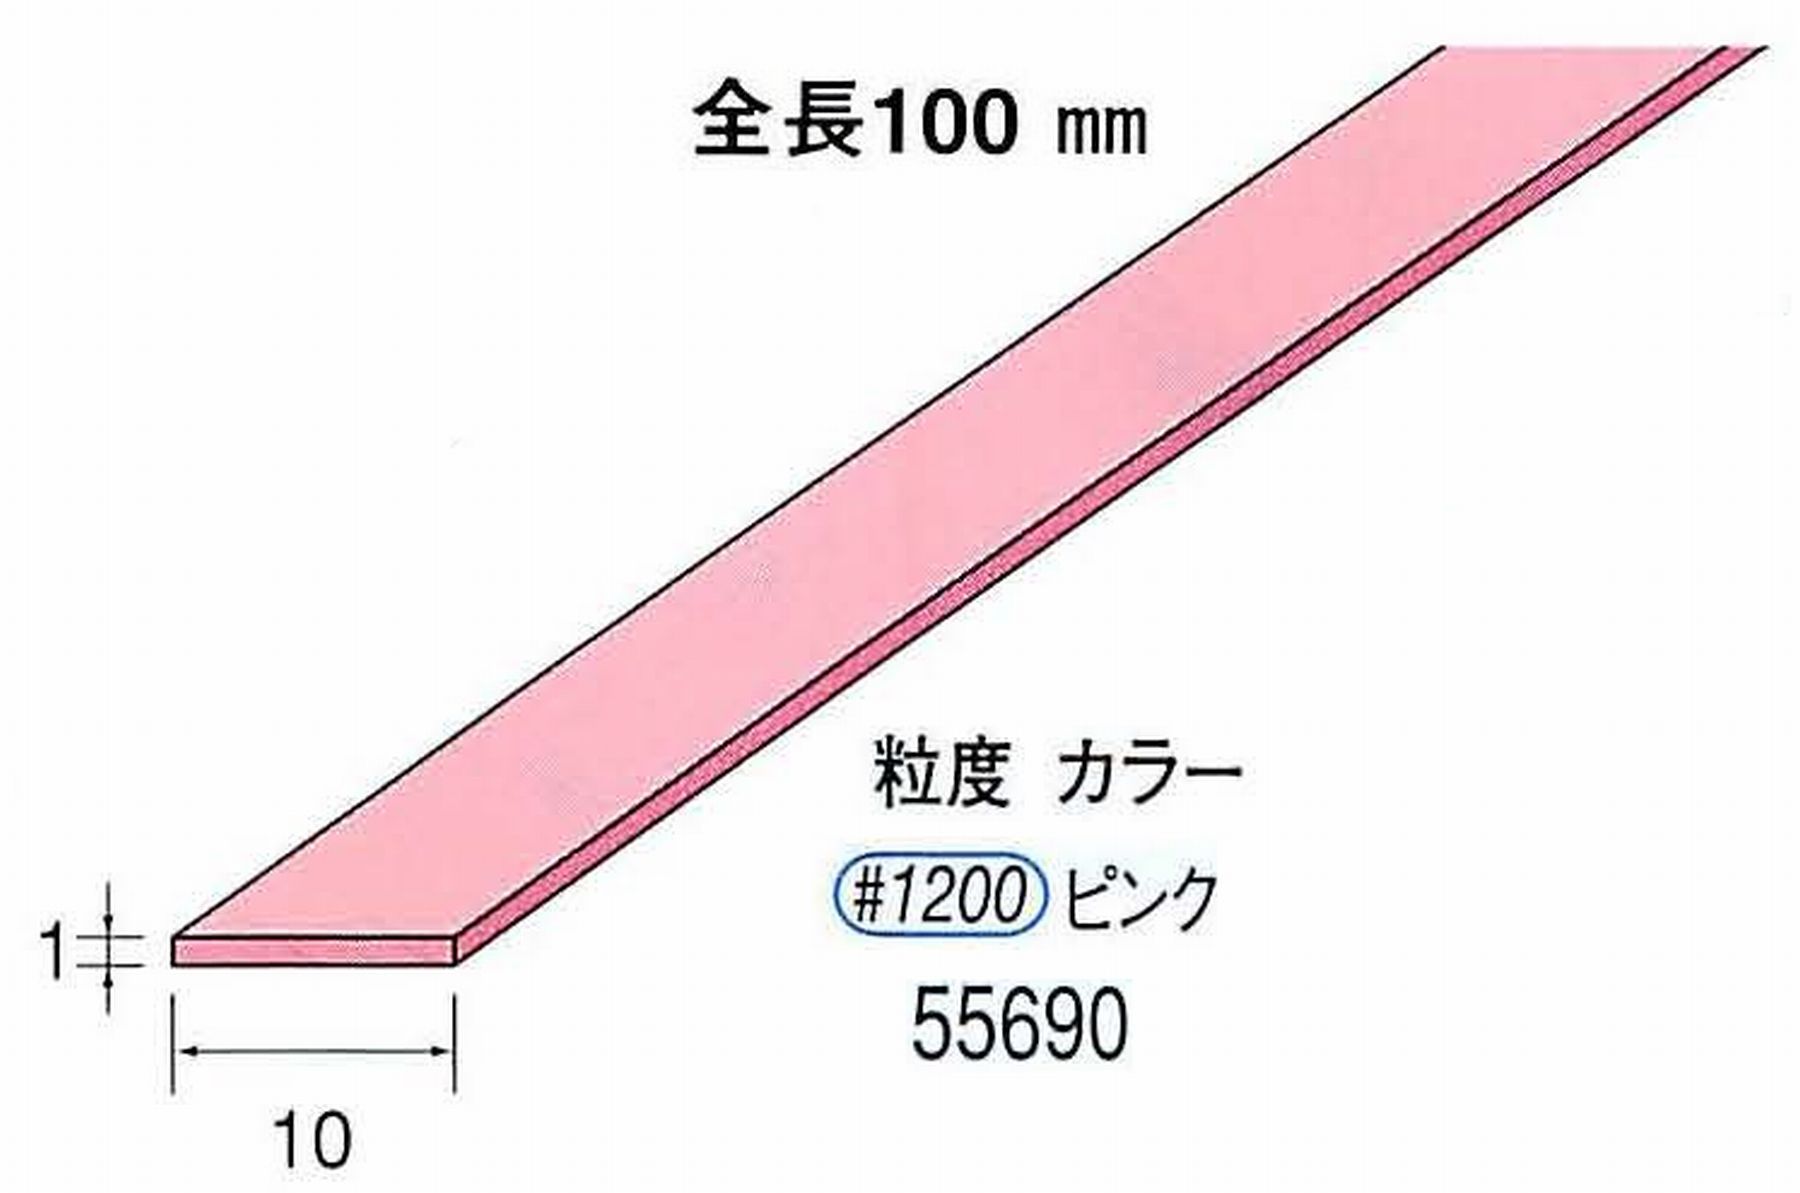 ナカニシ/NAKANISHI セラファイバー砥石 全長100mm ピンク 55690